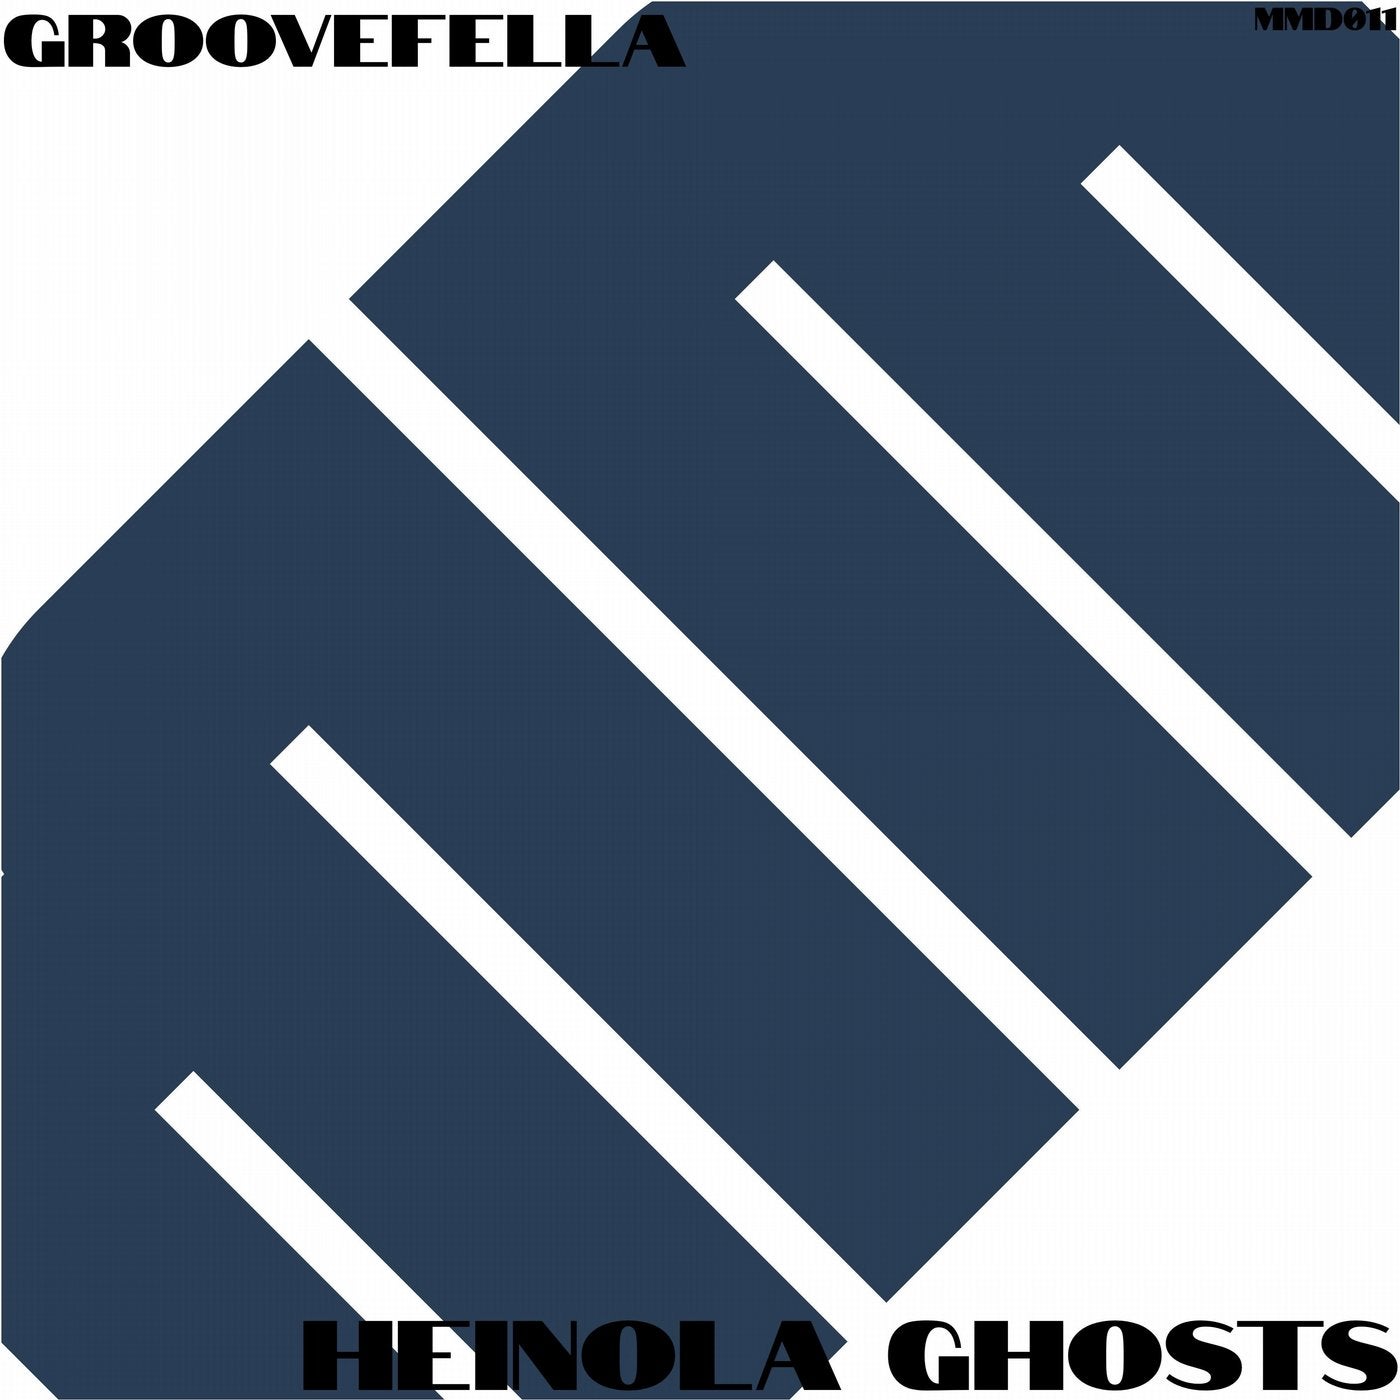 Heinola Ghosts